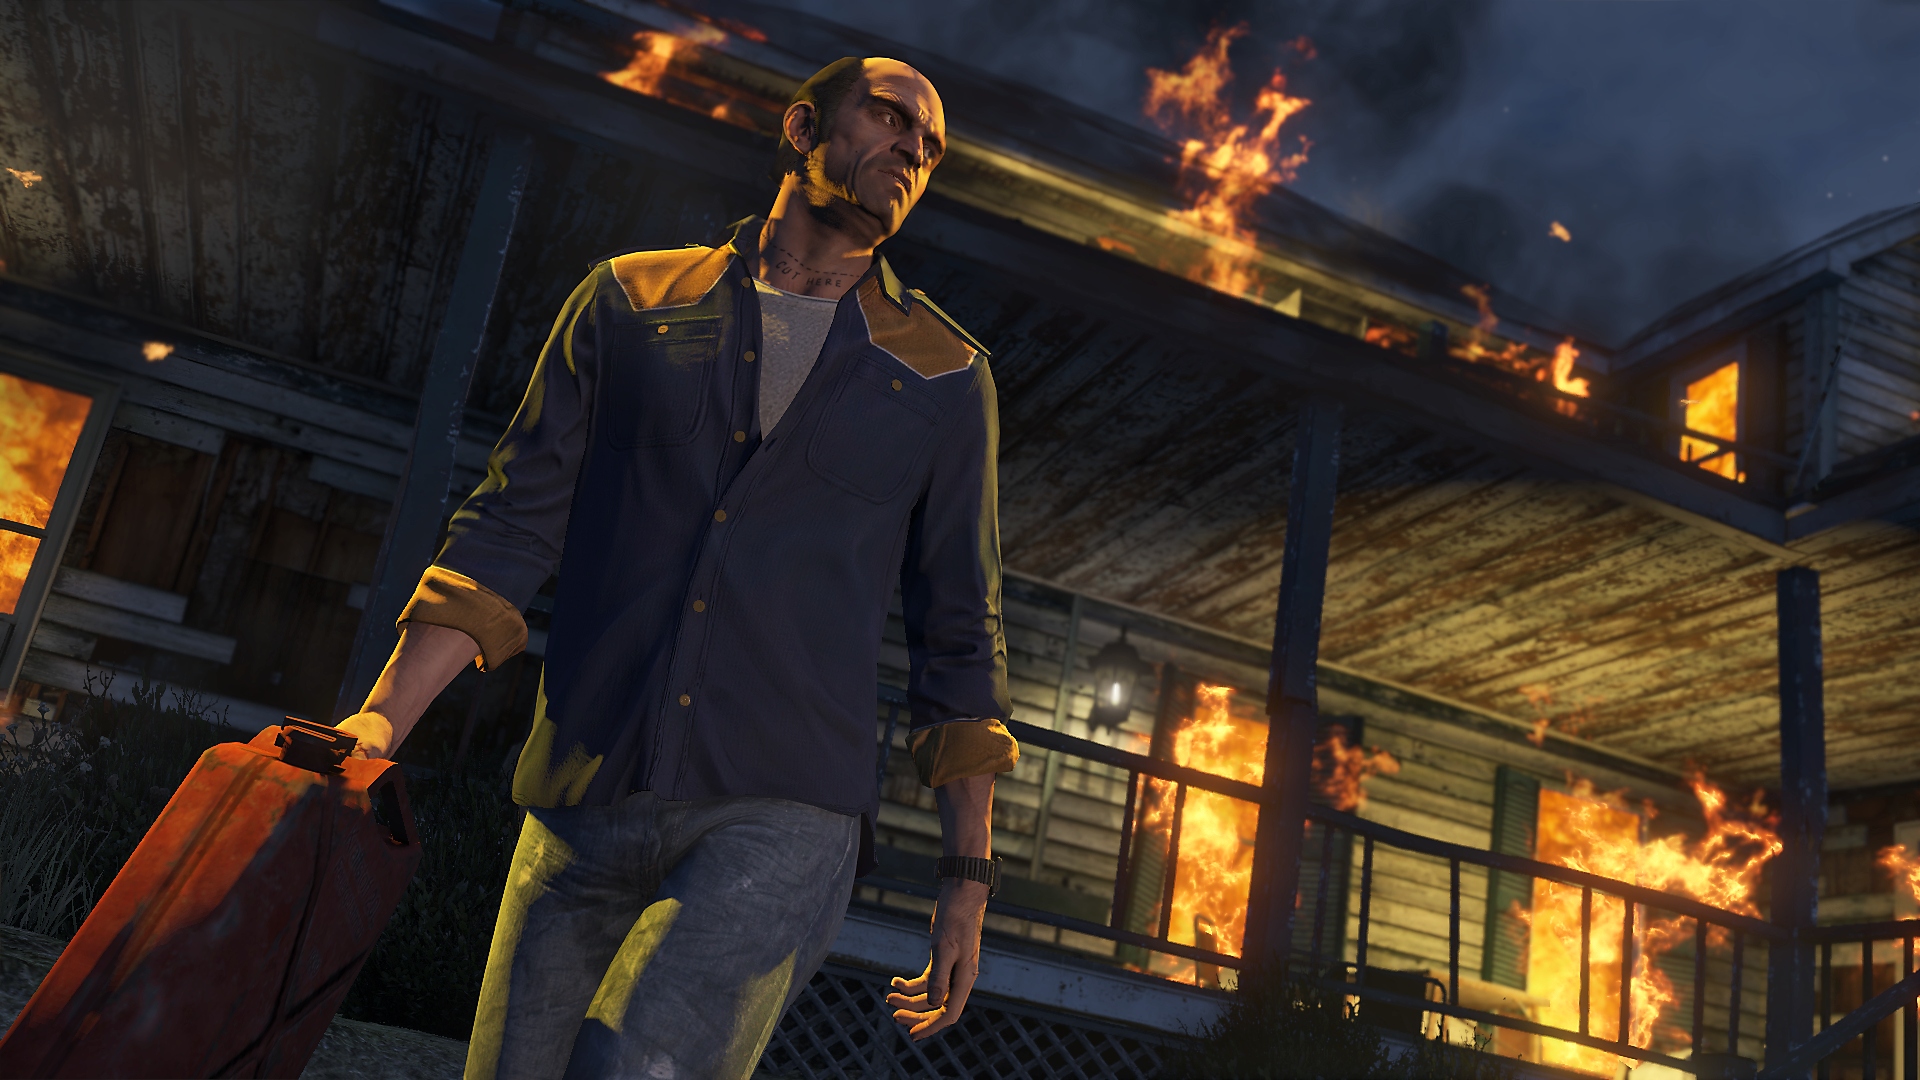 Grand Theft Auto V - Captura de tela mostrando o protagonista, Trevor, se afastando de uma construção em chamas enquanto segura uma lata de gasolina.